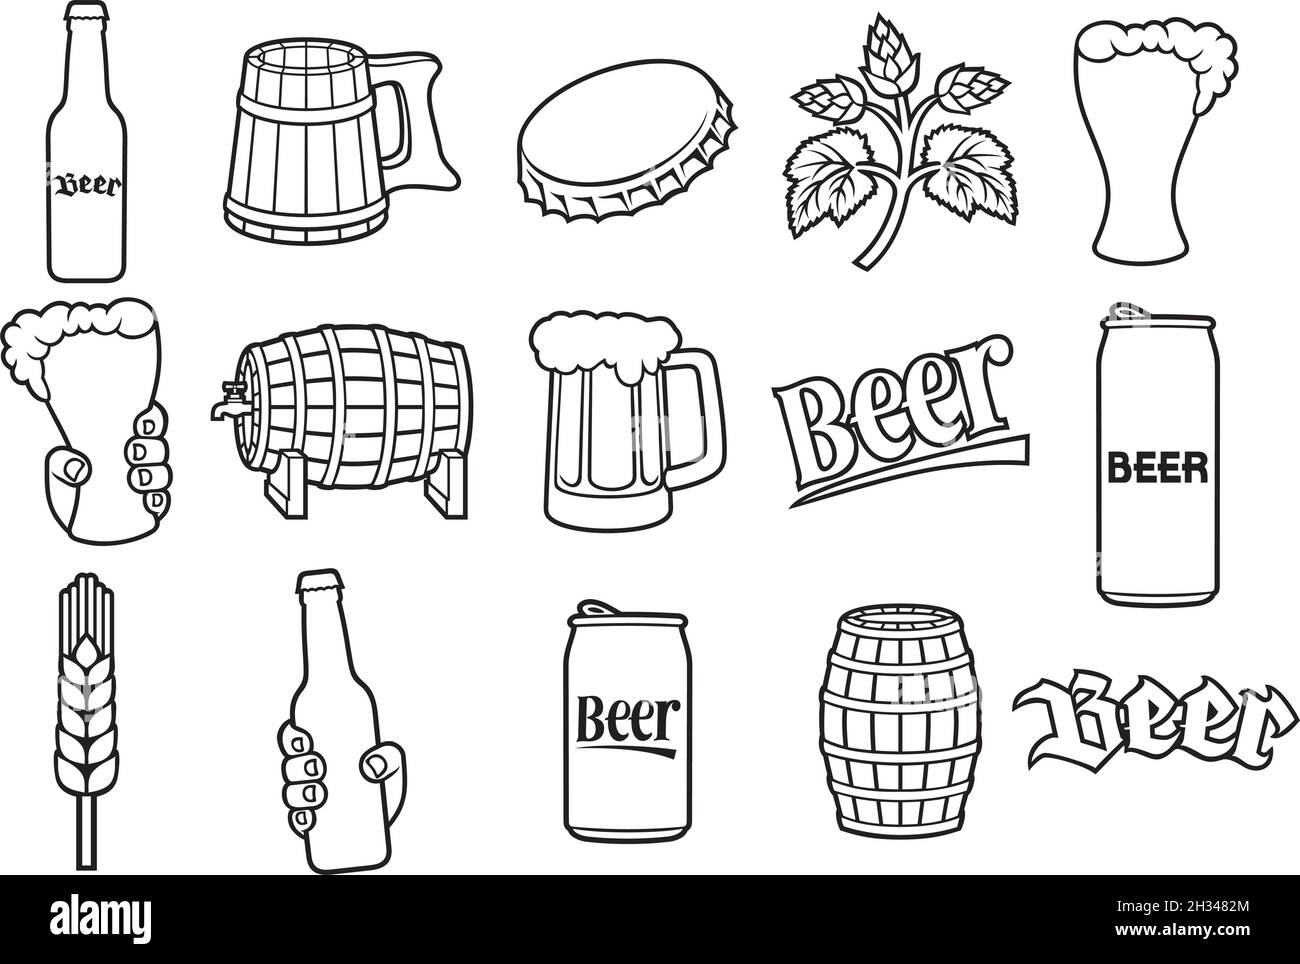 Beer line icons set (hop branch, wooden barrel, hand holding glass, can, bottle cap, mug, bottle) vector illustration Stock Vector